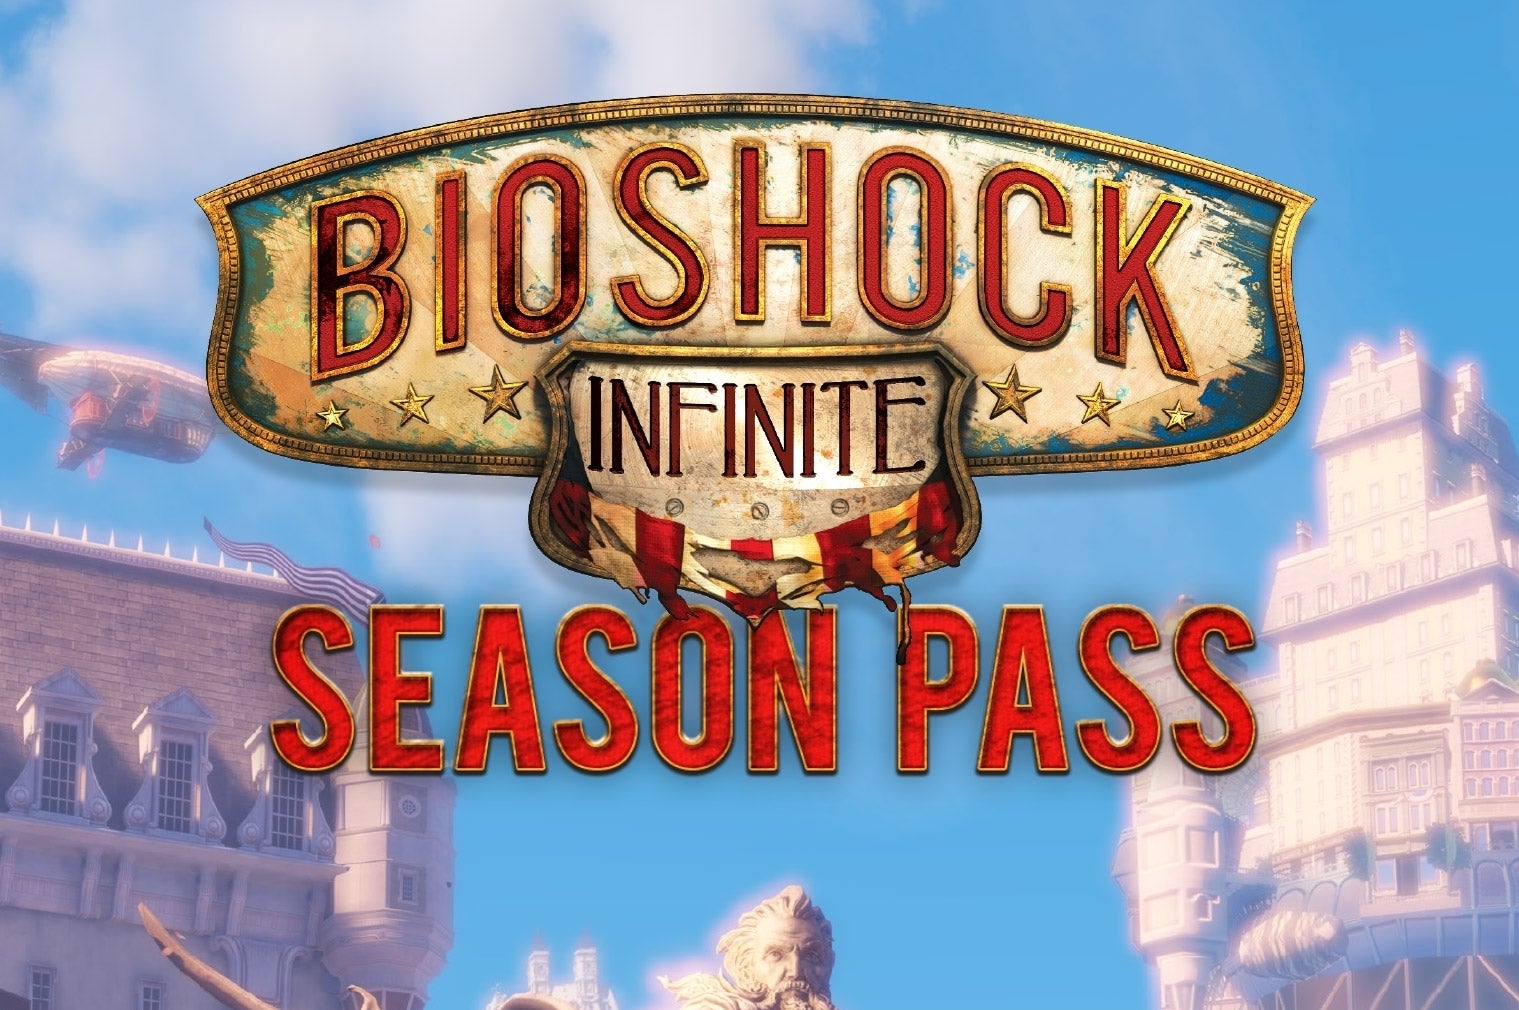 Obrazki dla Zapowiedziano przepustkę sezonową do BioShock Infinite